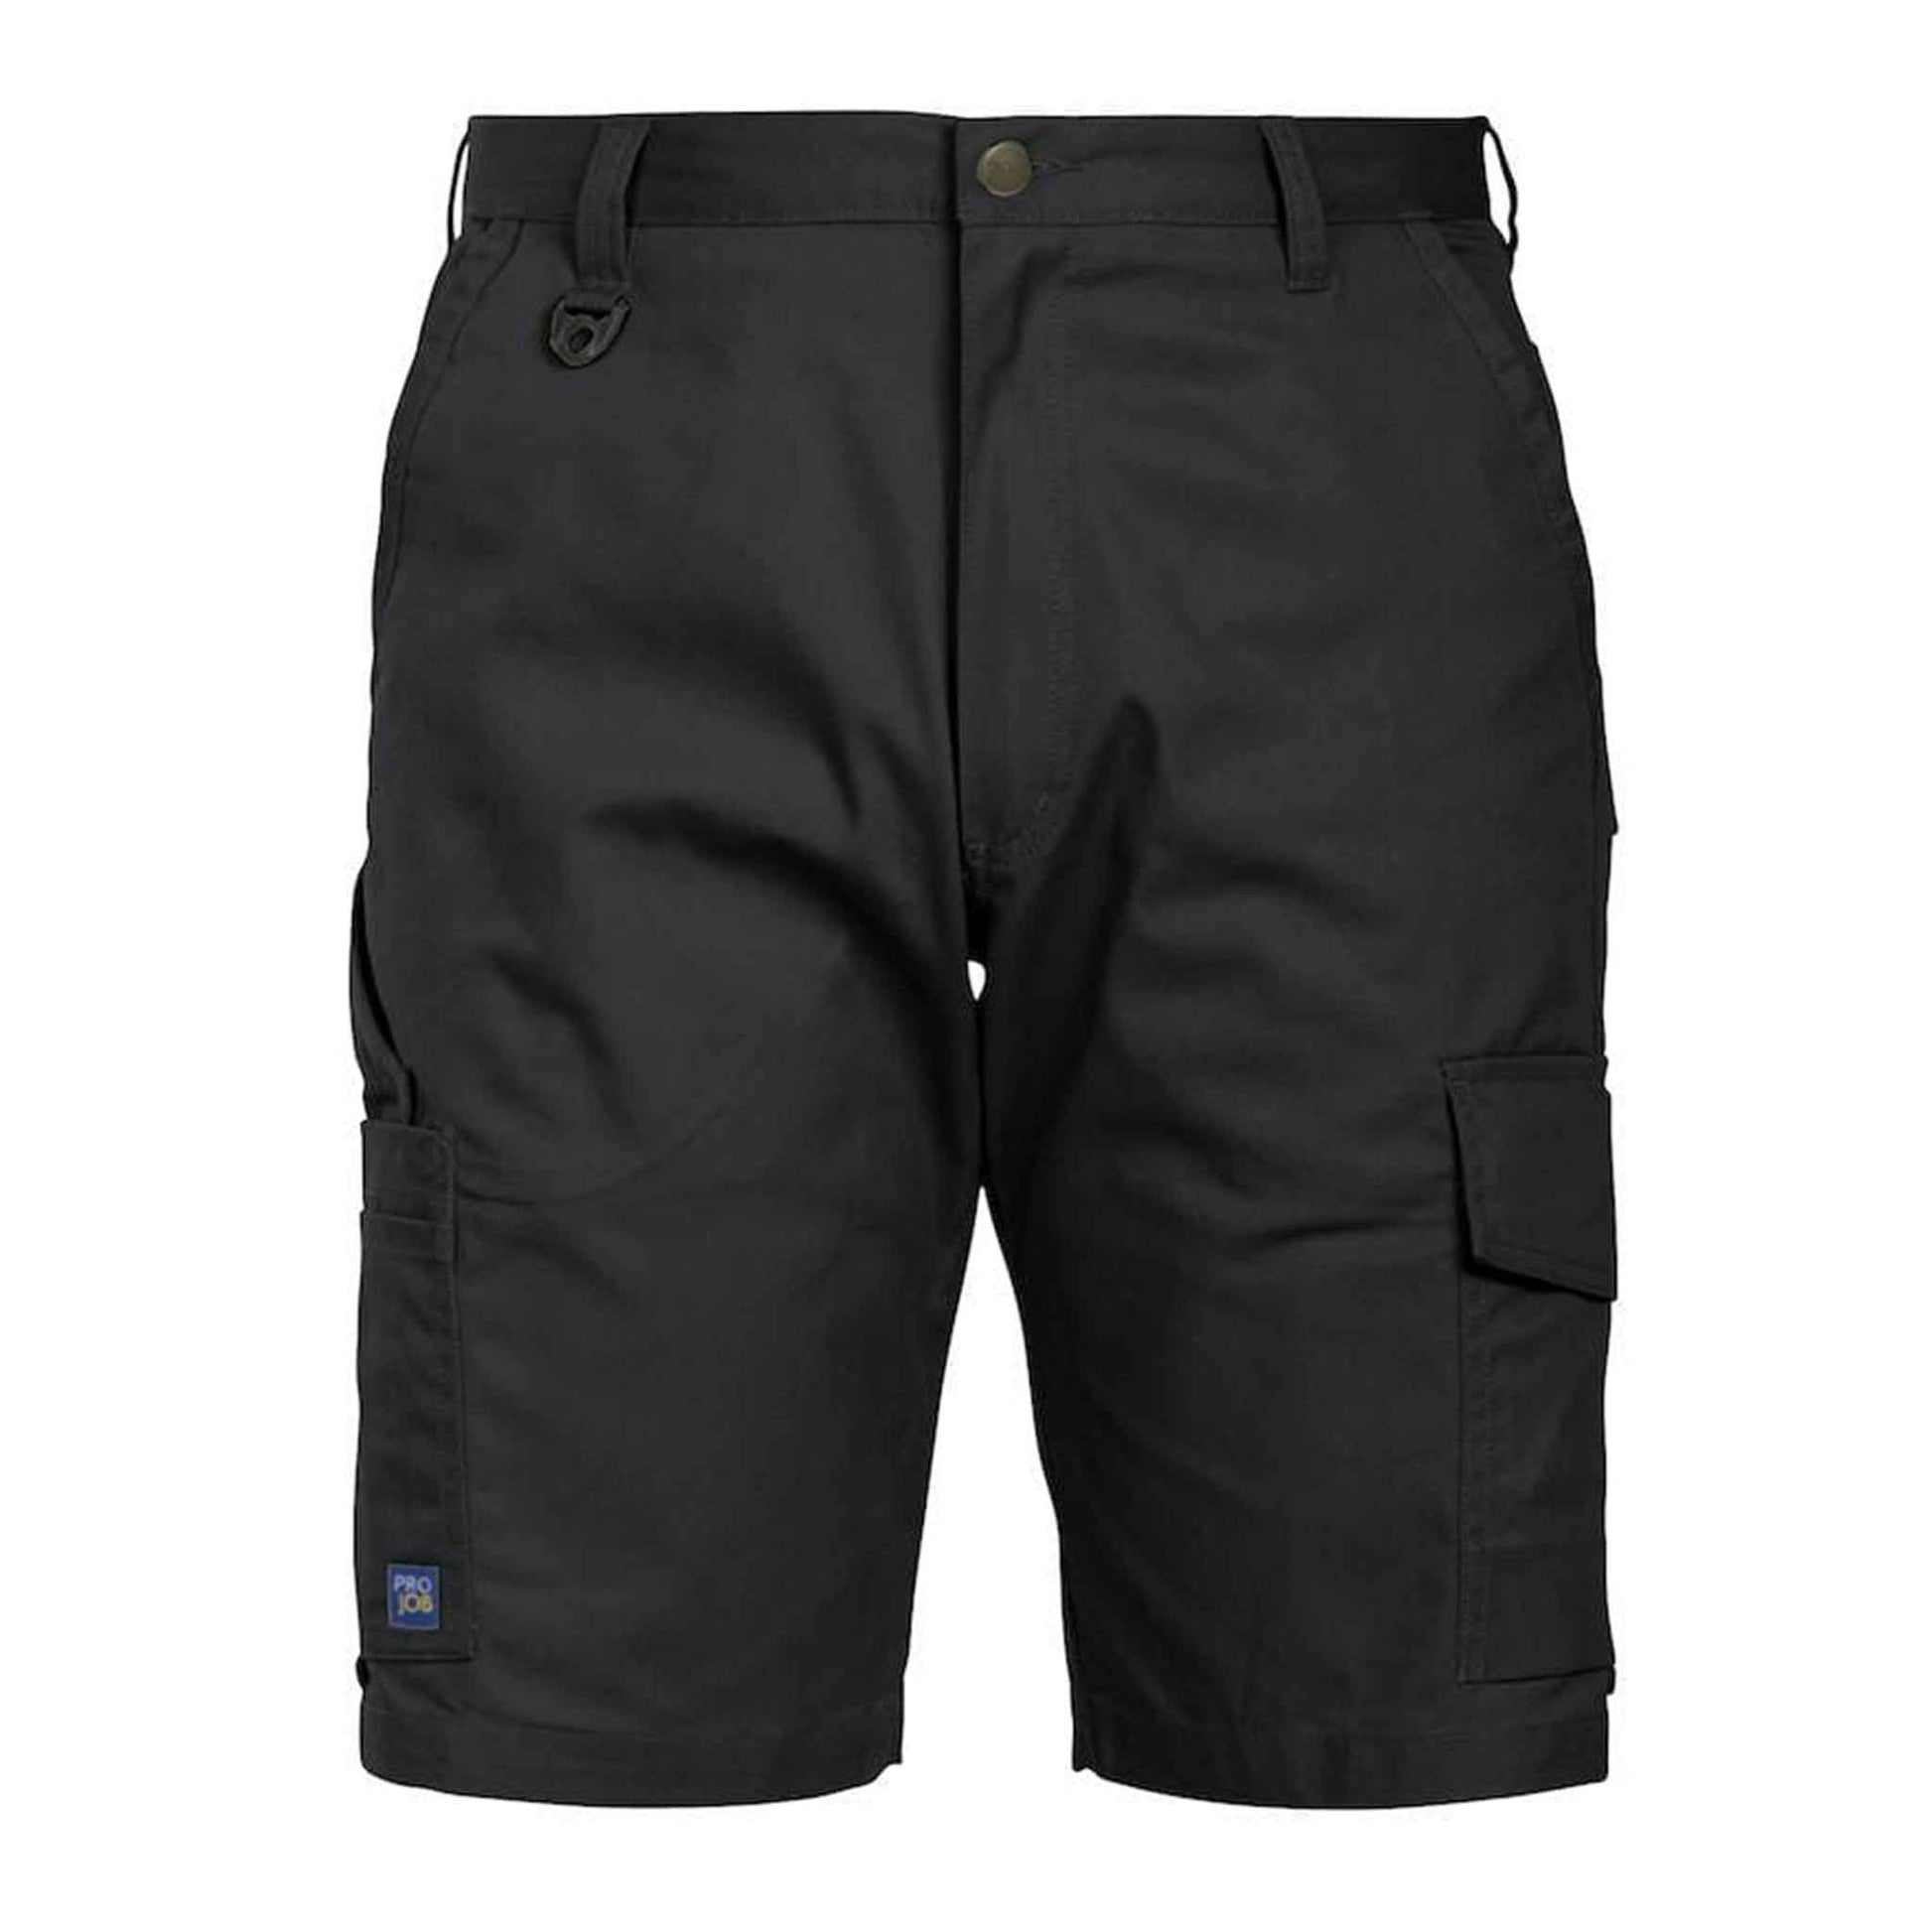 Herren Shorts-Gerade geschnittene Shorts ohne Bundfalten (Arbeitskleidung)